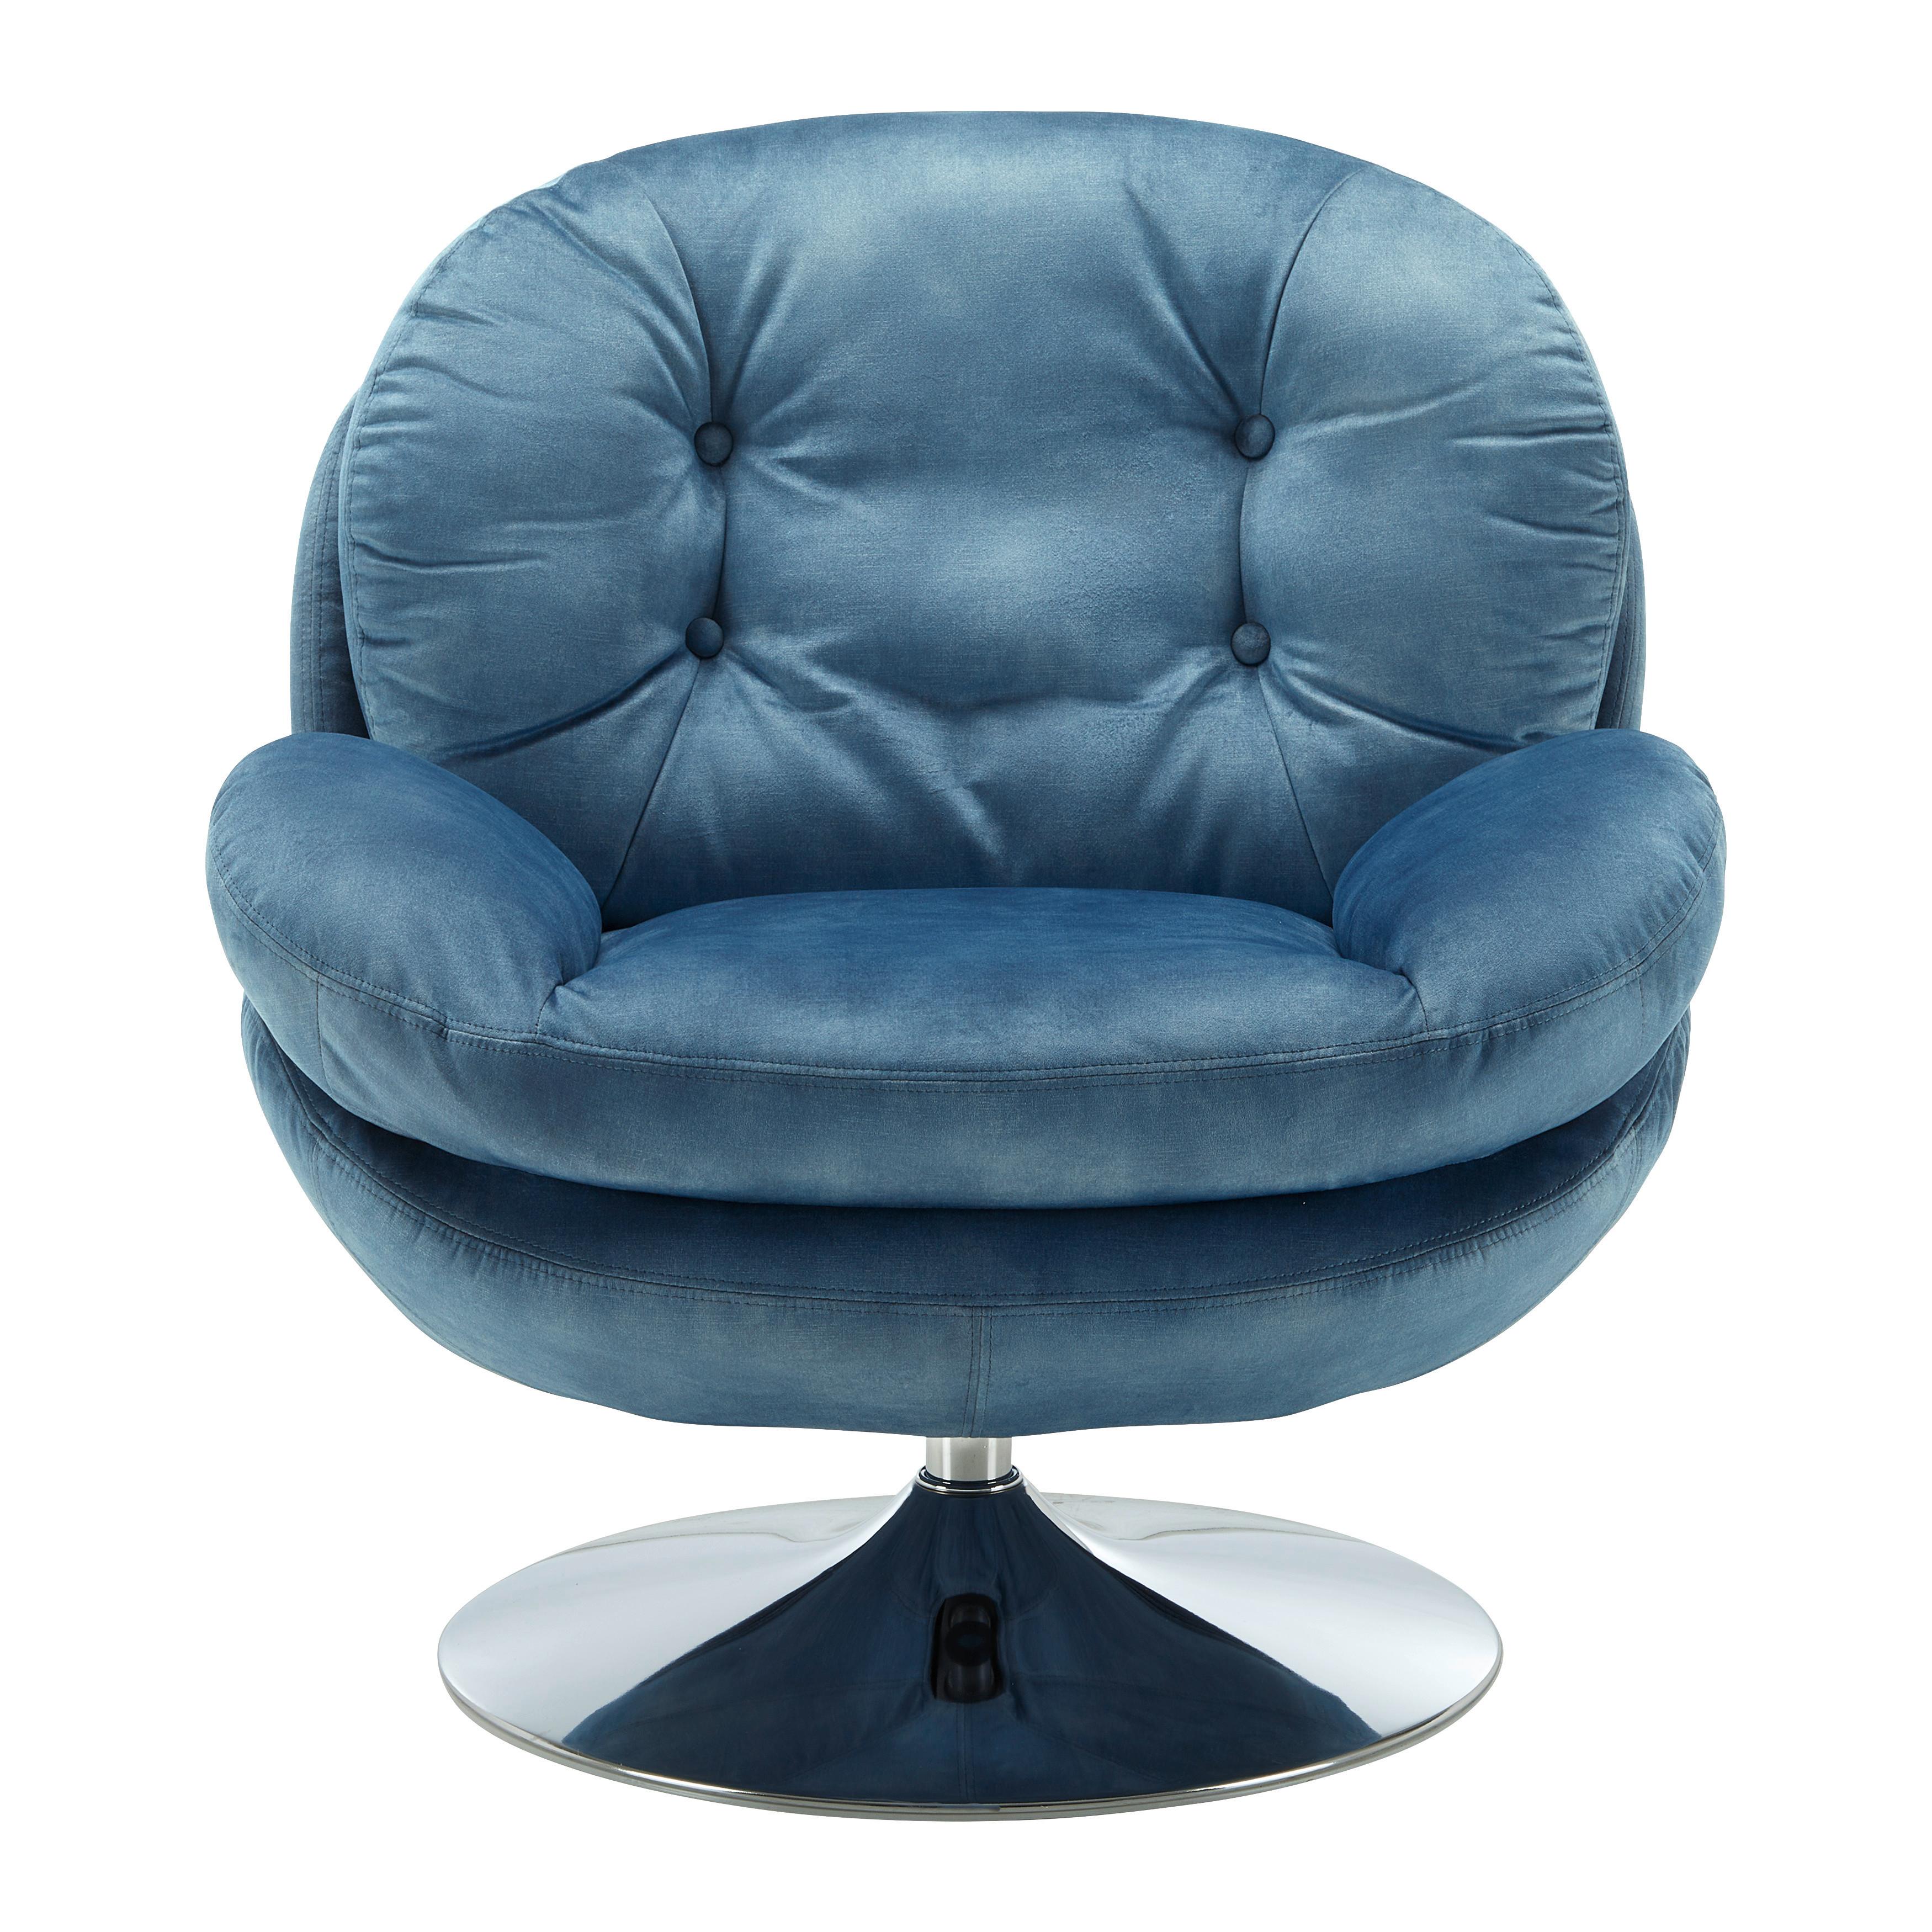 Relaxsessel drehbar, blau, "Ommy", Samt - Blau/Chromfarben, MODERN, Textil/Metall (82,5/84,5/85,5cm) - Bessagi Home